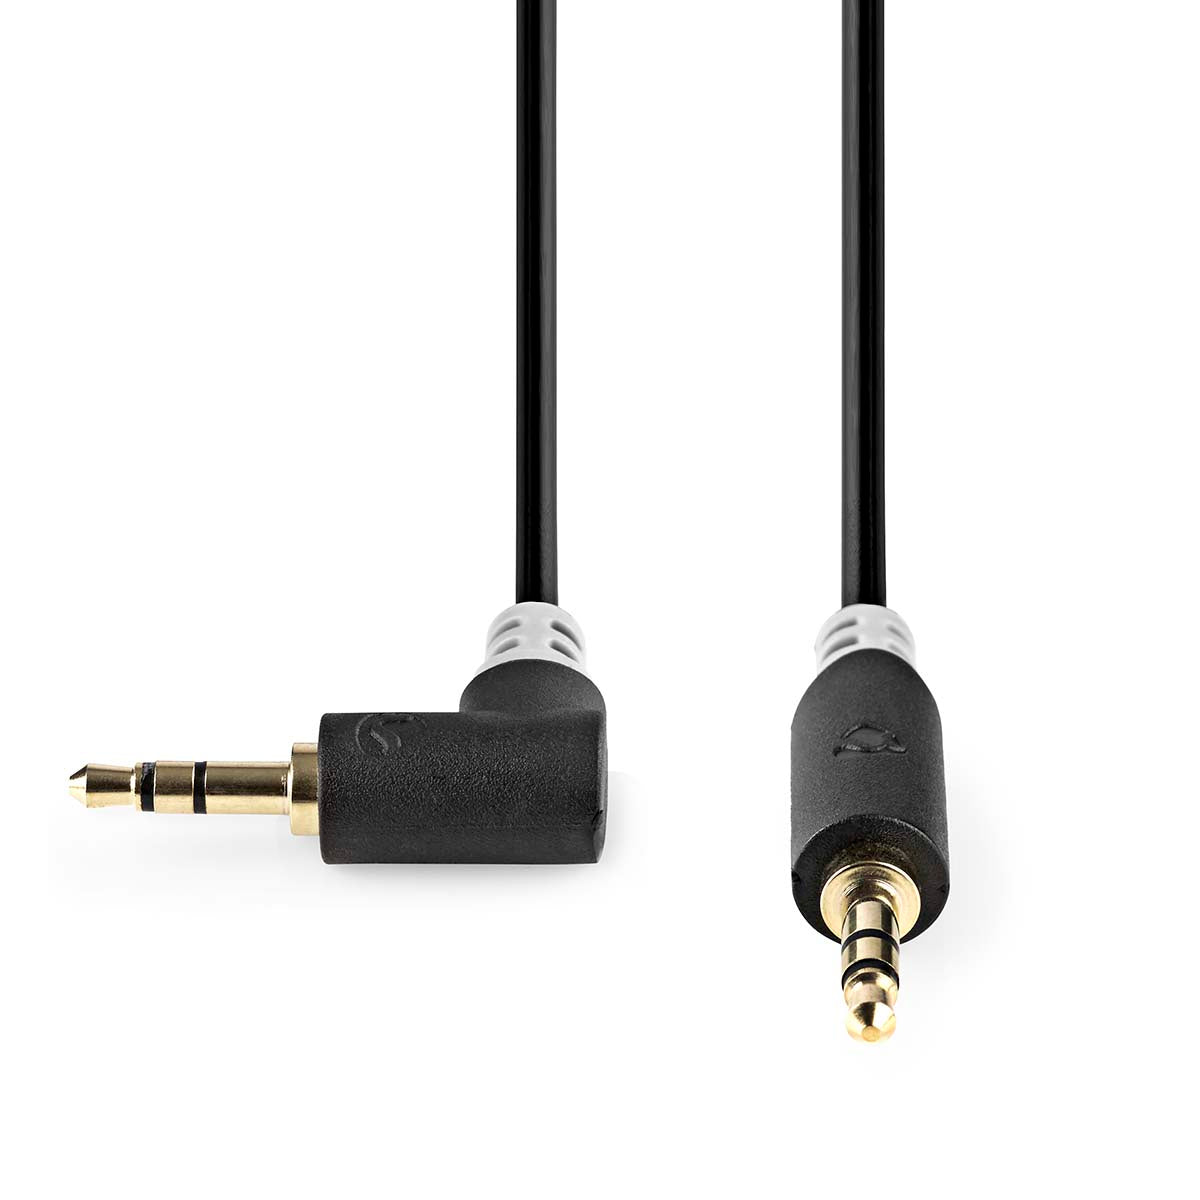 Stereo-Audiokabel | 3.5 mm Stecker | 3.5 mm Stecker | Vergoldet | 0.50 m | Rund | Anthrazit | Box